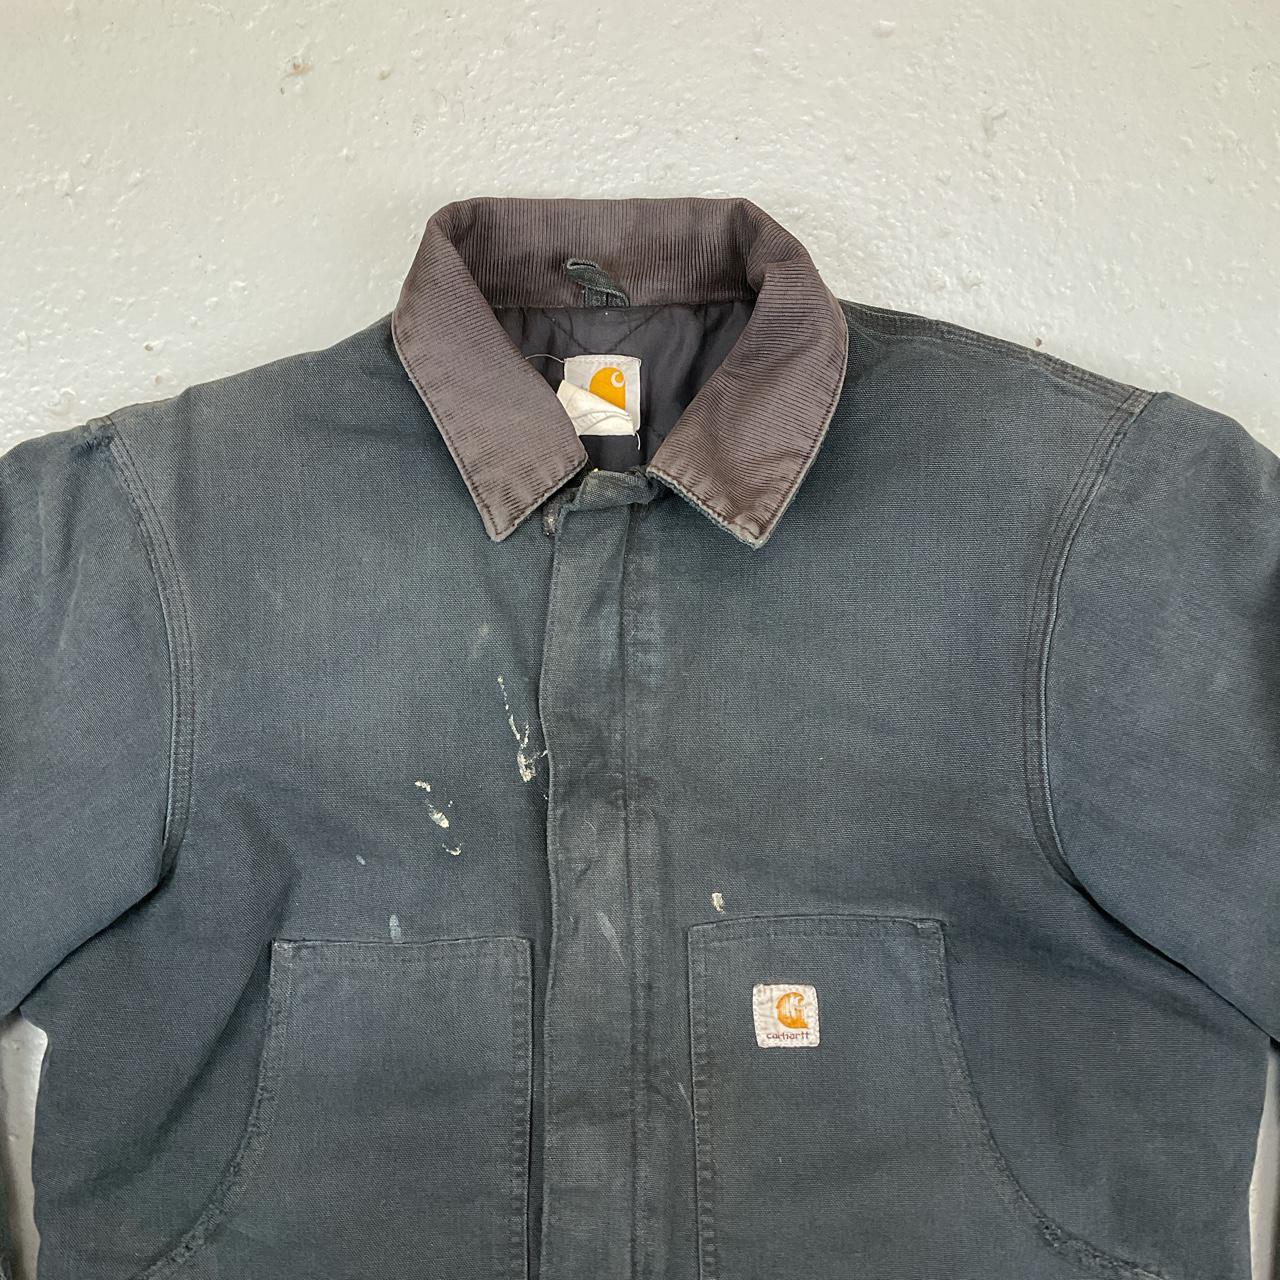 Carhartt vintage workwear jacket in faded... - Depop